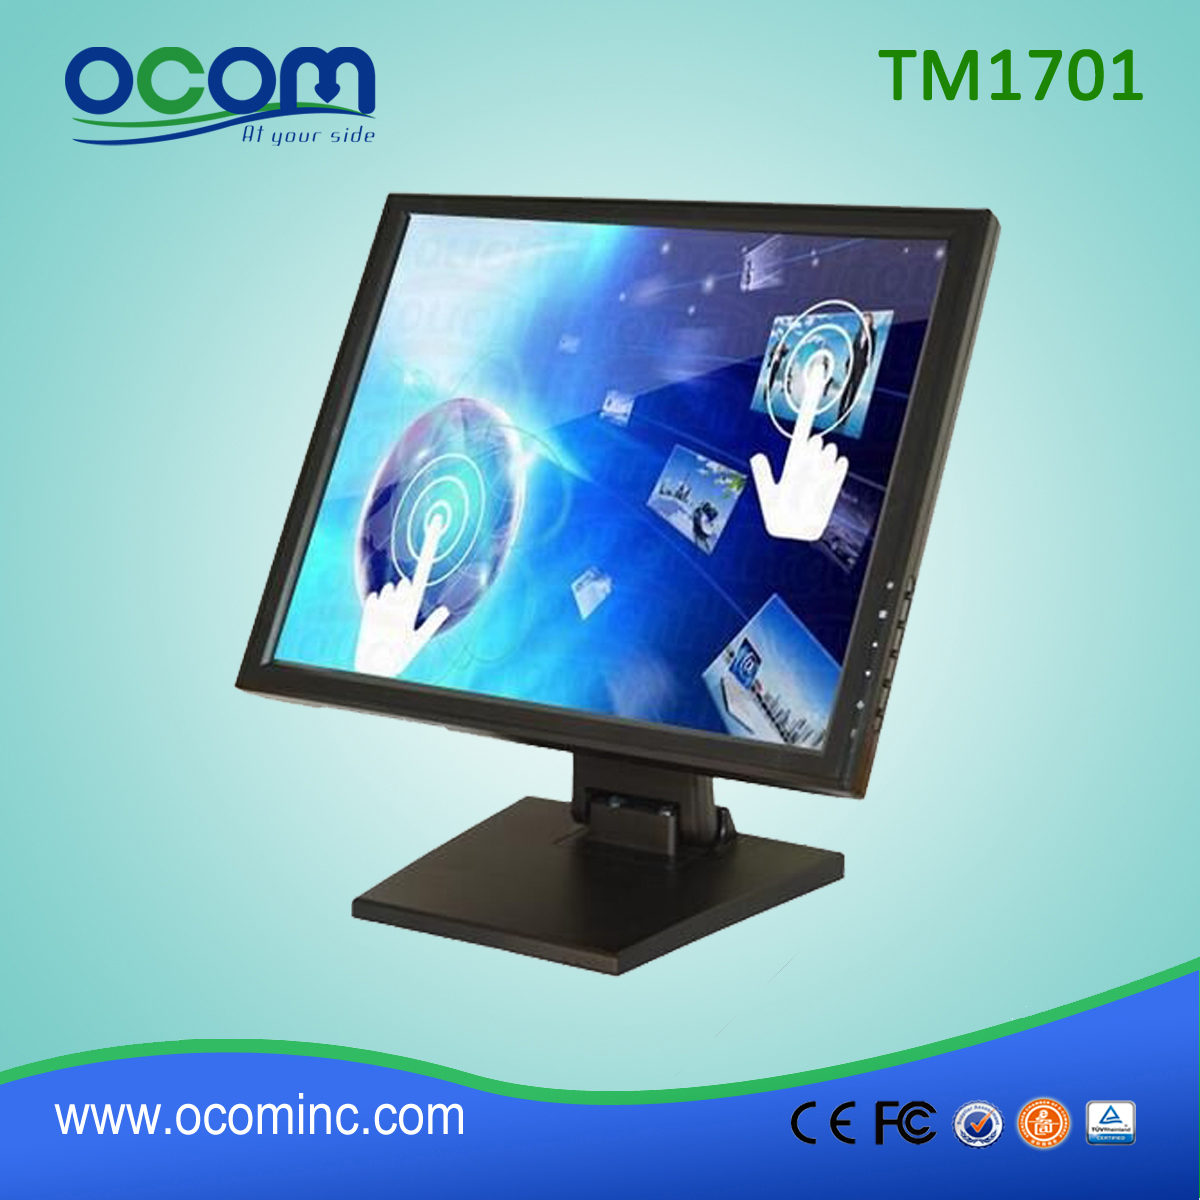 TM1701 شاشة تعمل باللمس 17 بوصة شاشة LCD مع قاعدة نصبت